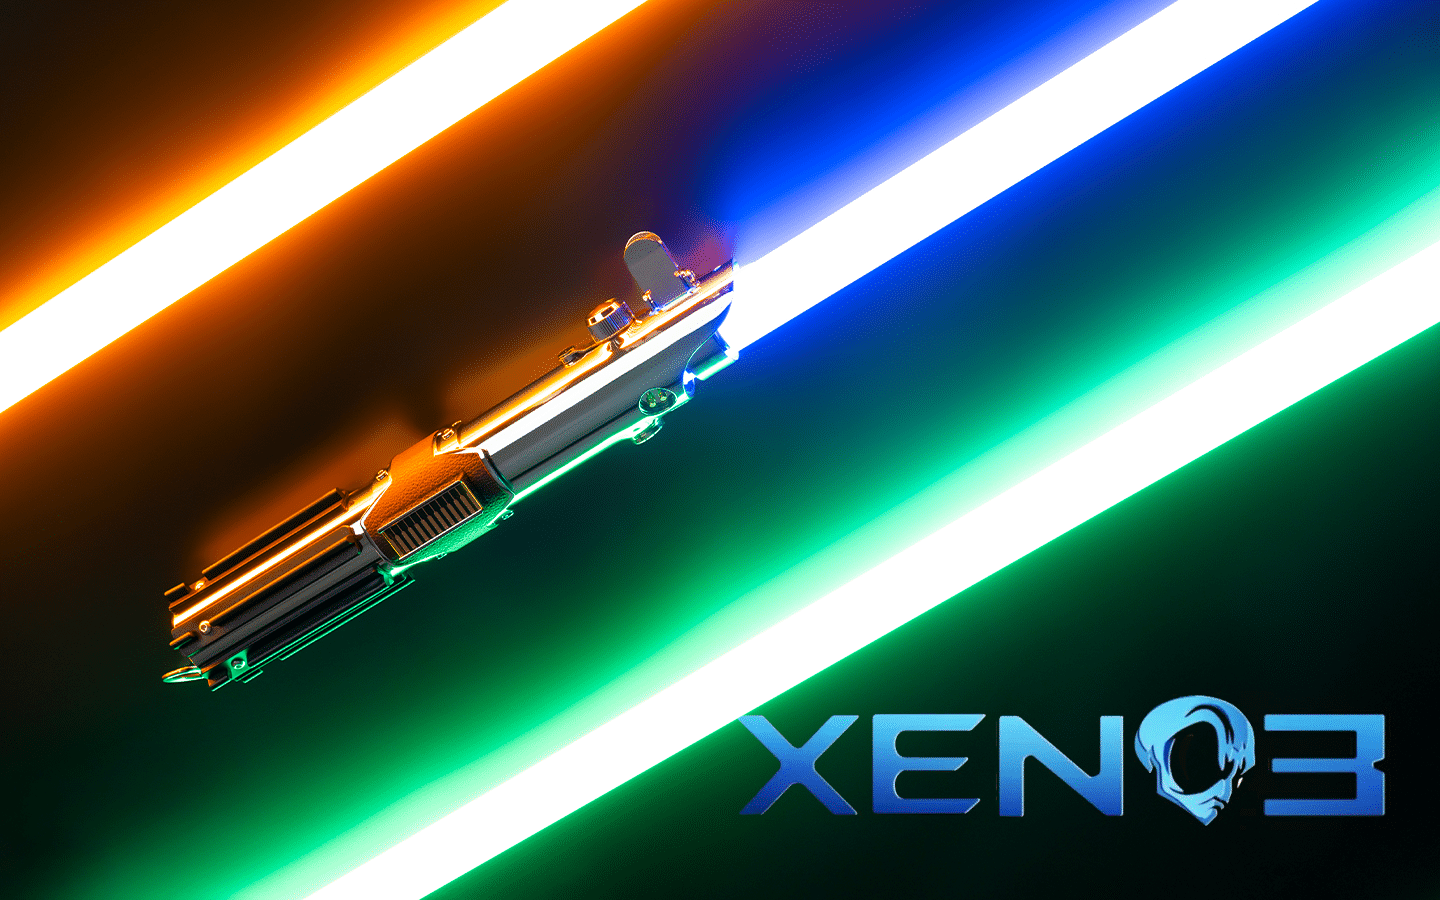 Xeno 3 soundboard